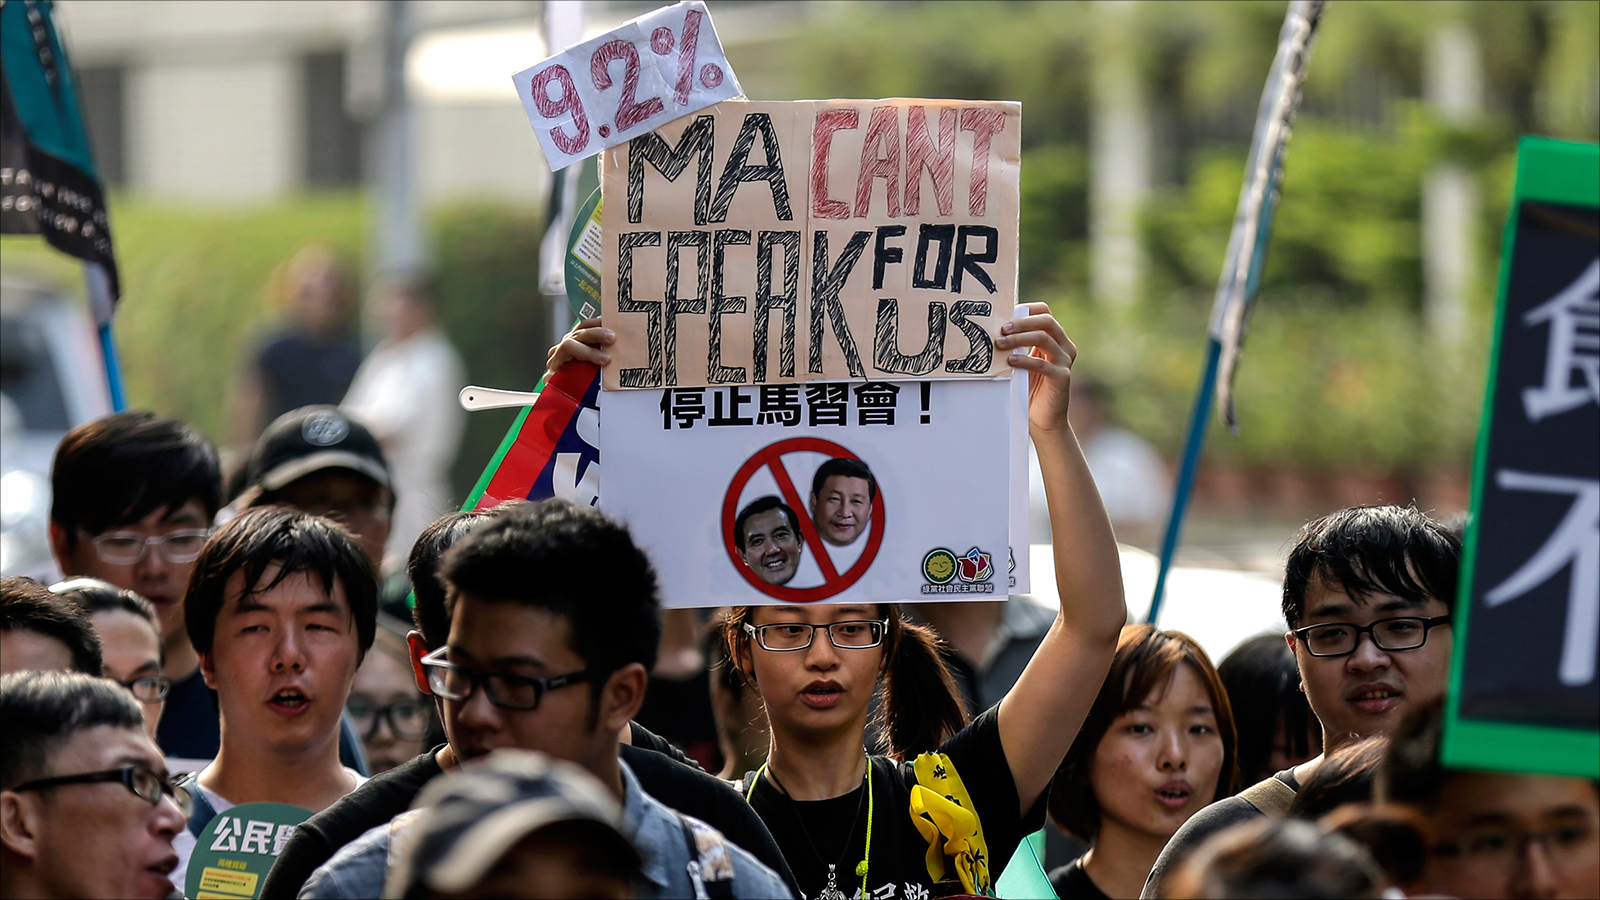 ‪مئات التايوانيين في الشوارع احتجاجا على لقاء رئيسهم بالزعيم الصيني‬ (الأوروبية)